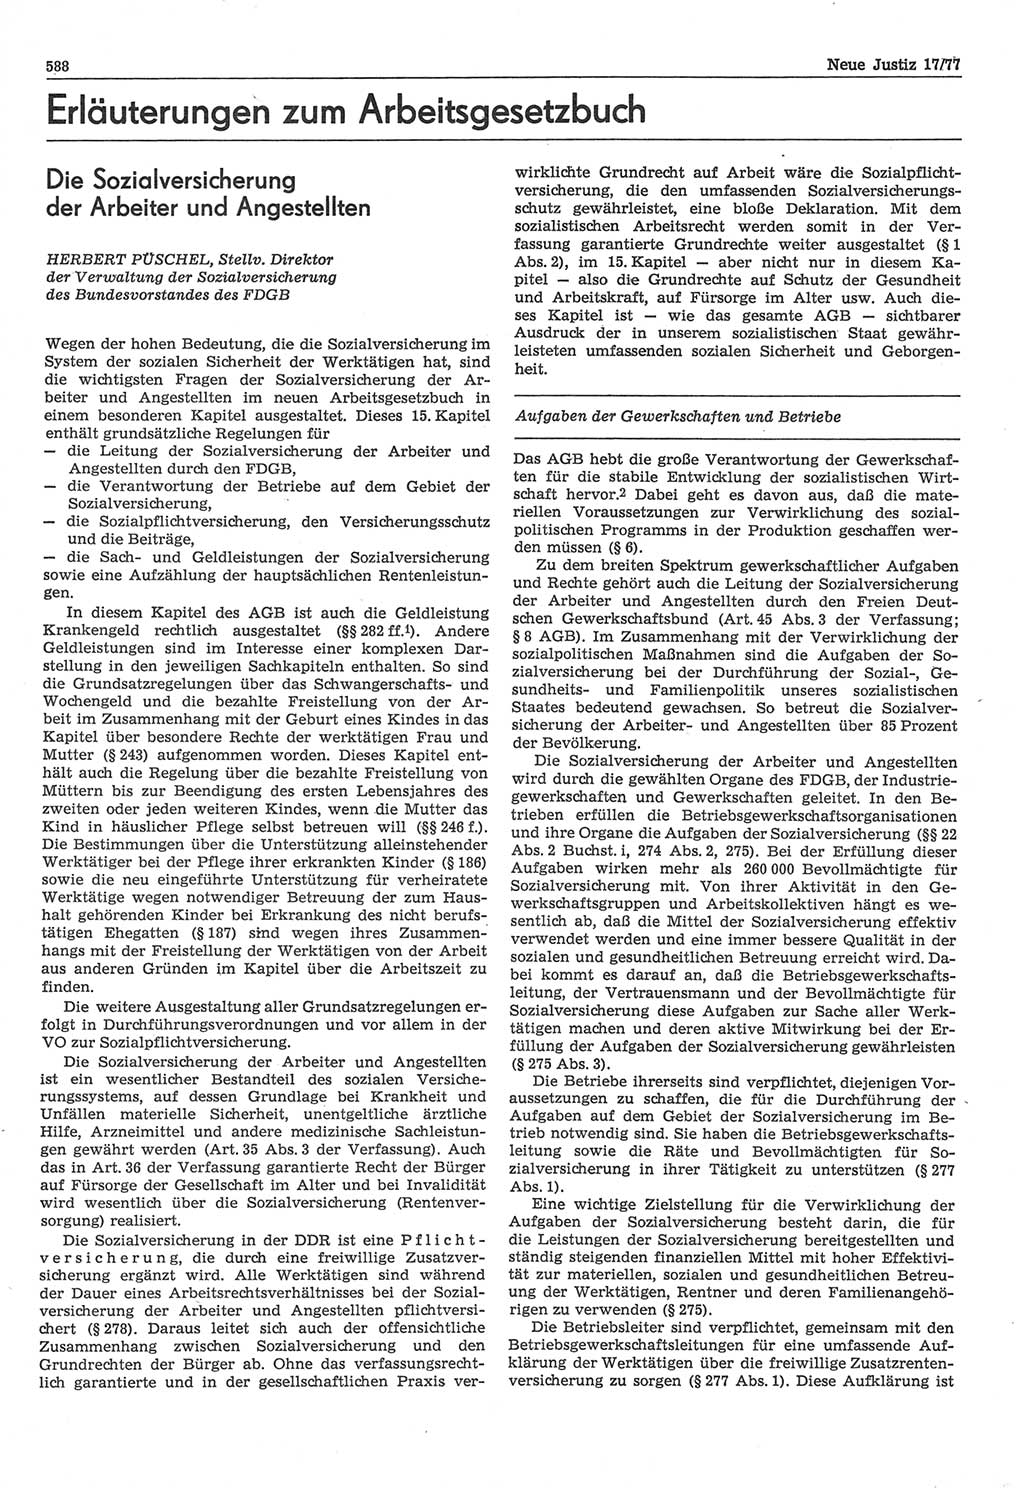 Neue Justiz (NJ), Zeitschrift für Recht und Rechtswissenschaft-Zeitschrift, sozialistisches Recht und Gesetzlichkeit, 31. Jahrgang 1977, Seite 588 (NJ DDR 1977, S. 588)